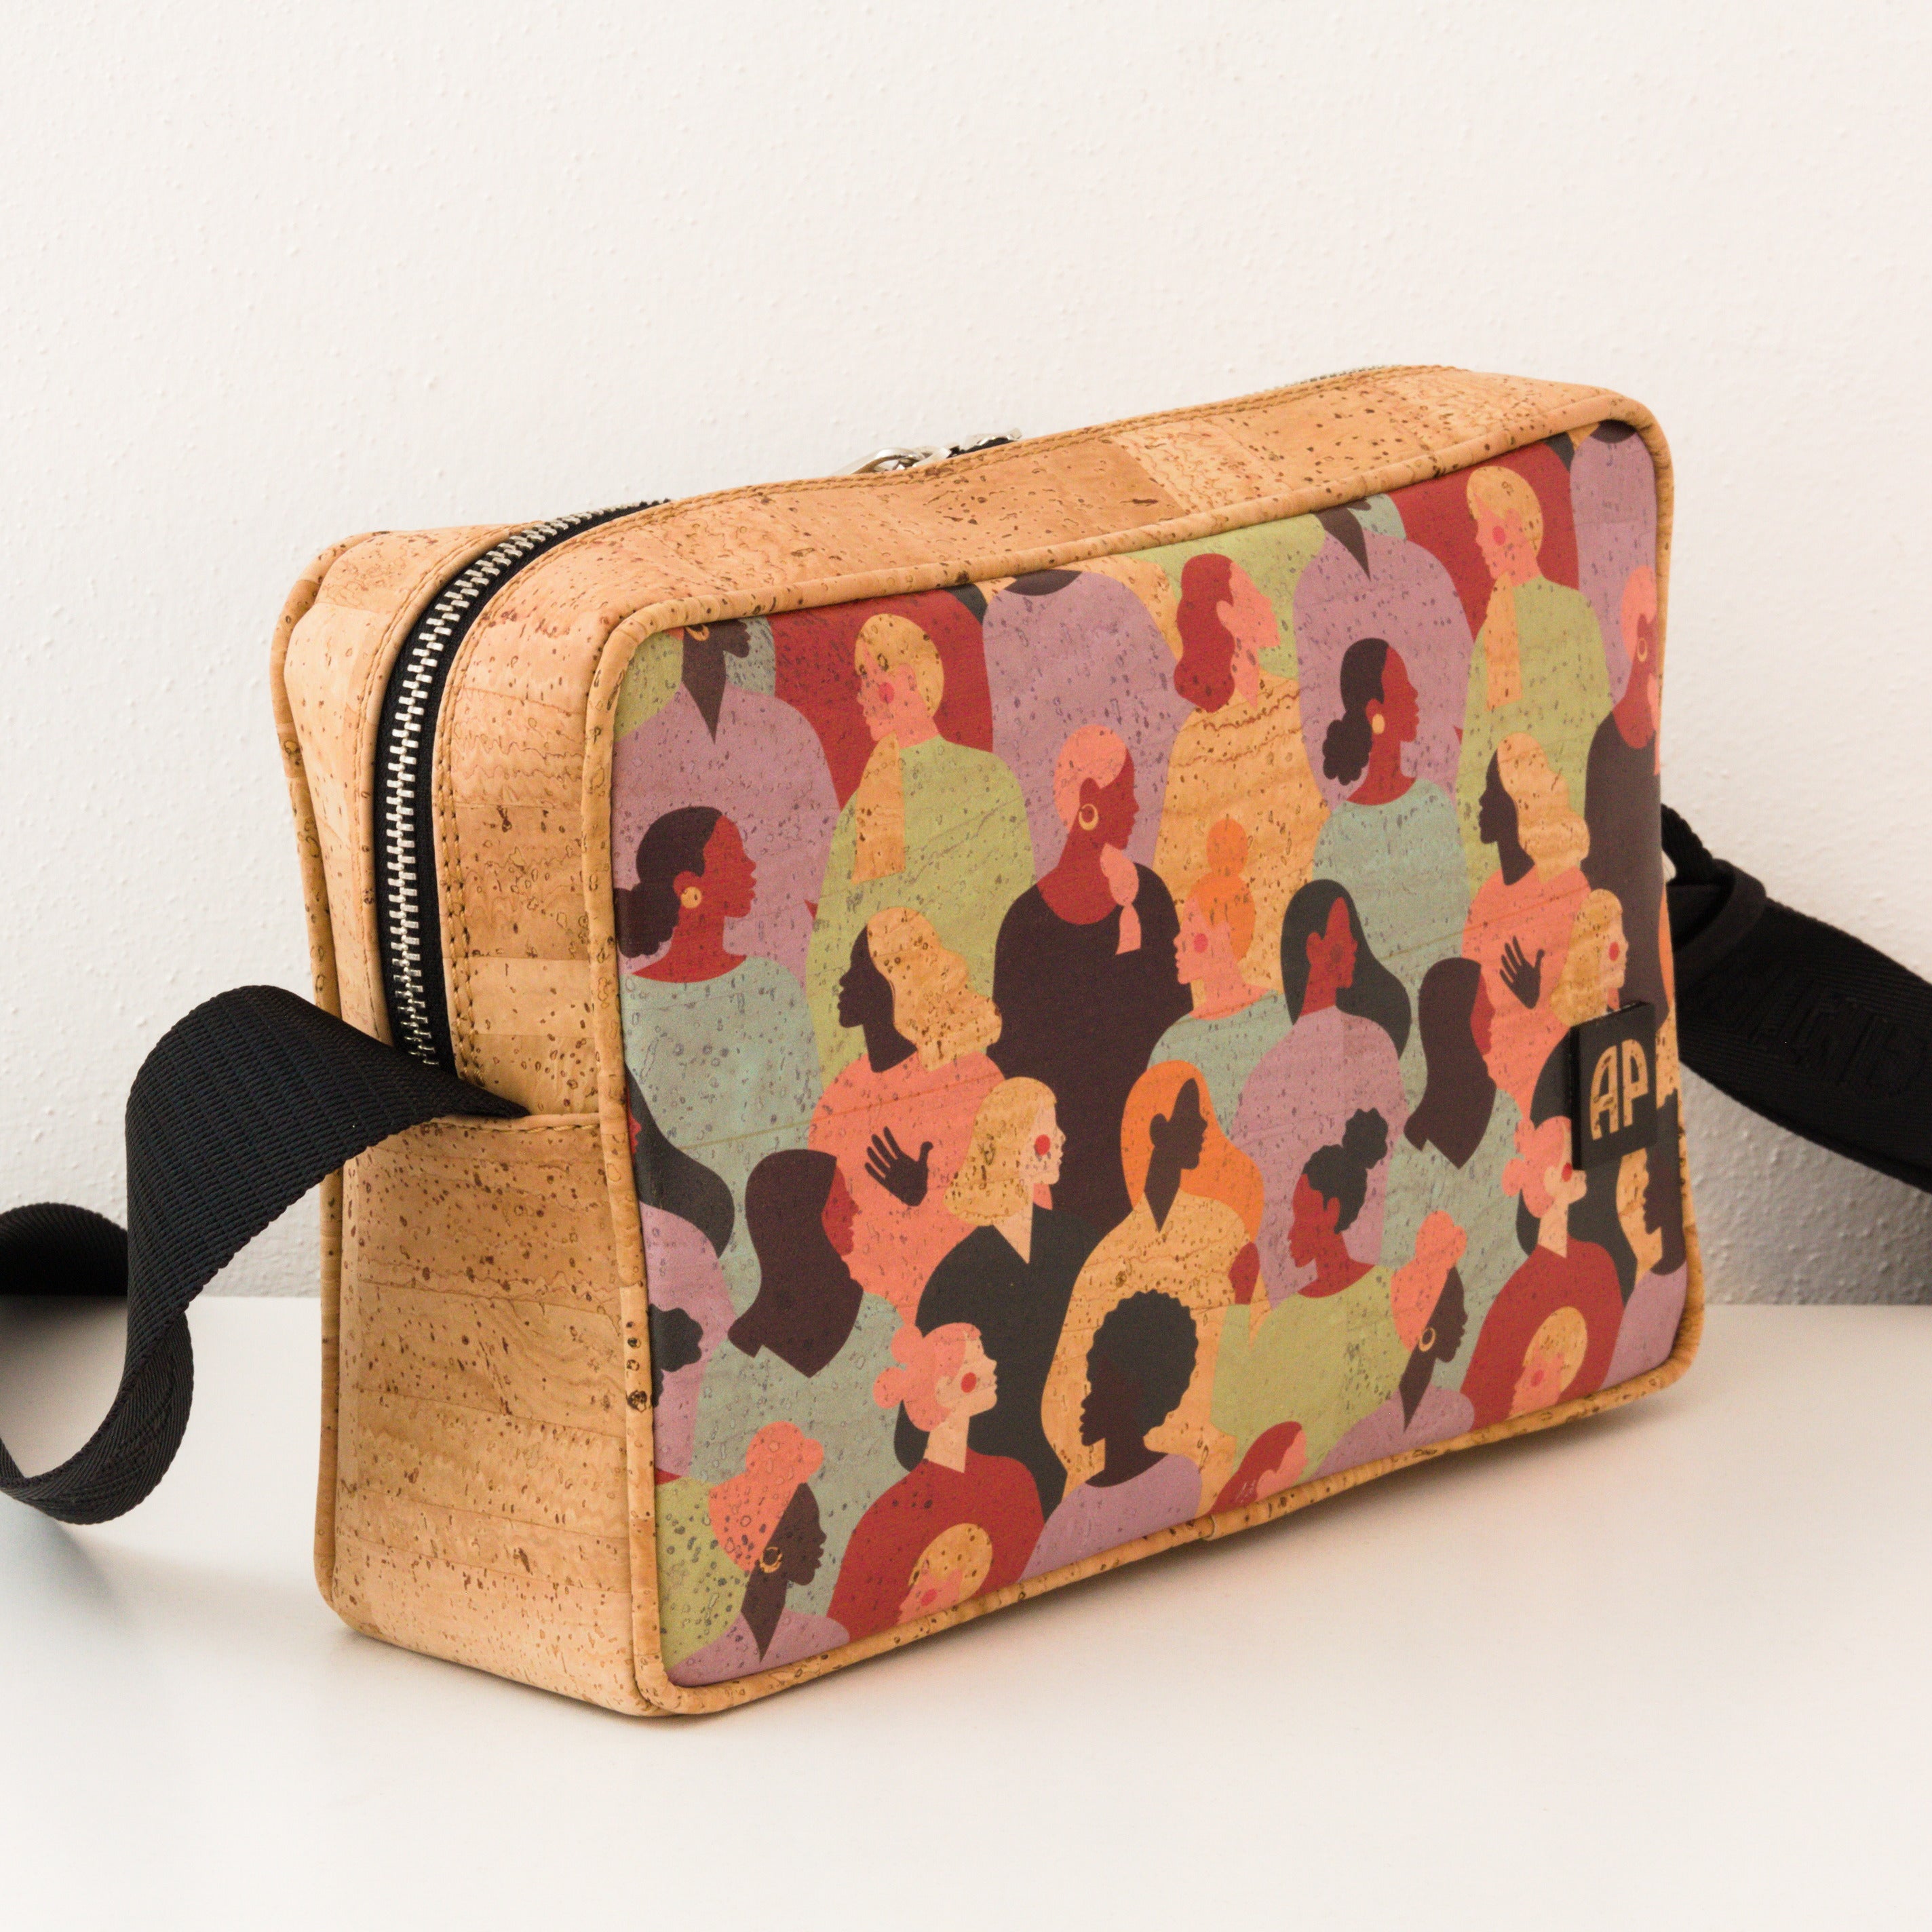 Kork Handtasche * in 2 Designs * Vegan * Umhängetasche für Frauen * Crossbody * Shopper * handmade in Portugal